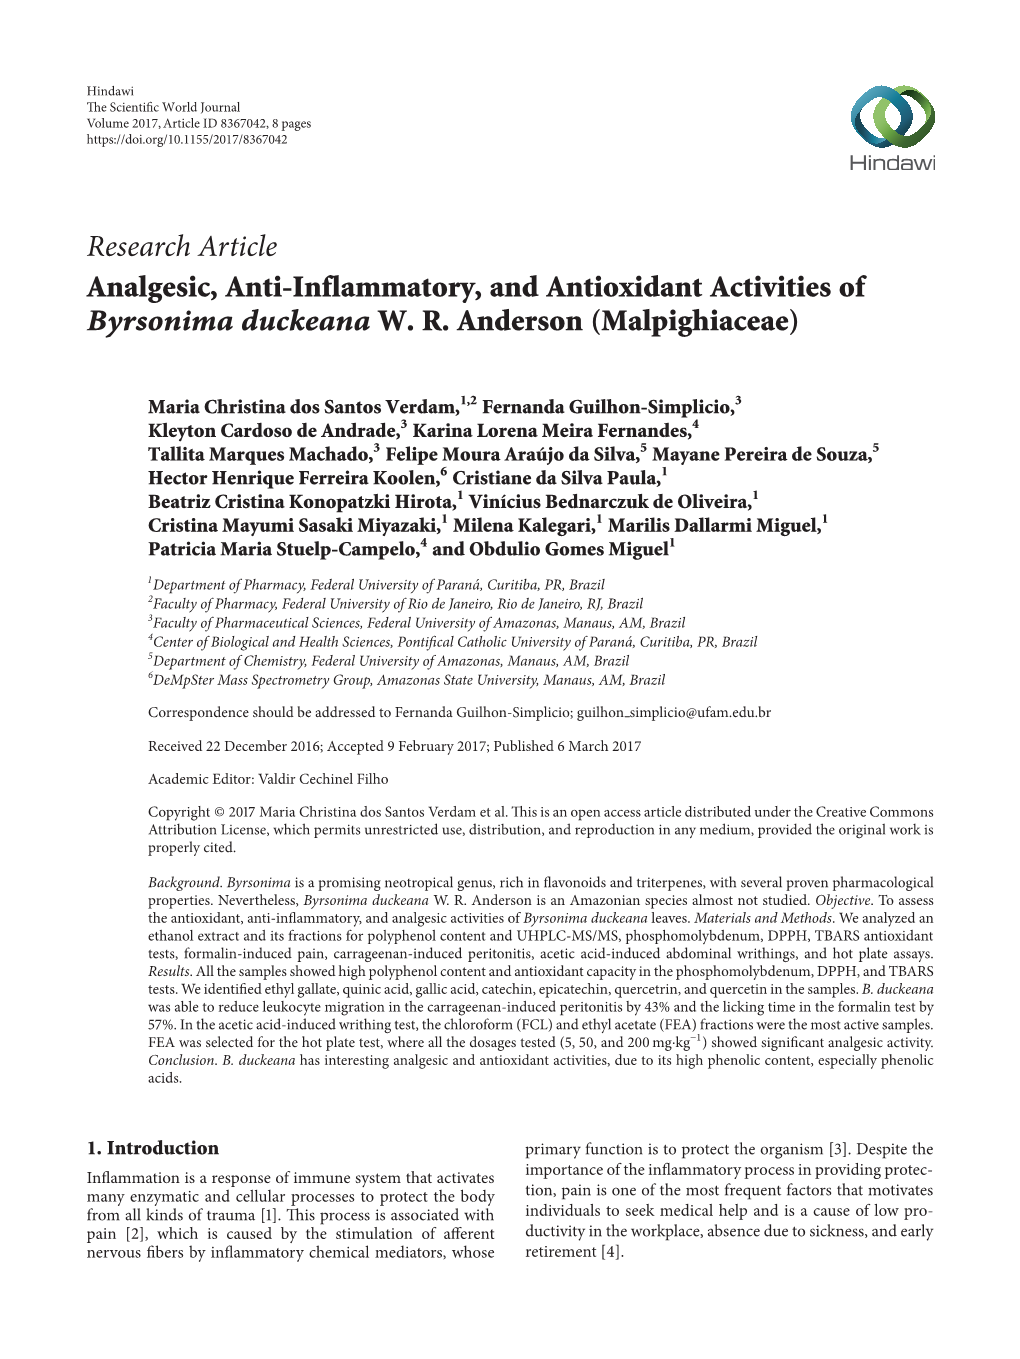 Analgesic, Anti-Inflammatory, and Antioxidant Activities of Byrsonima Duckeana W